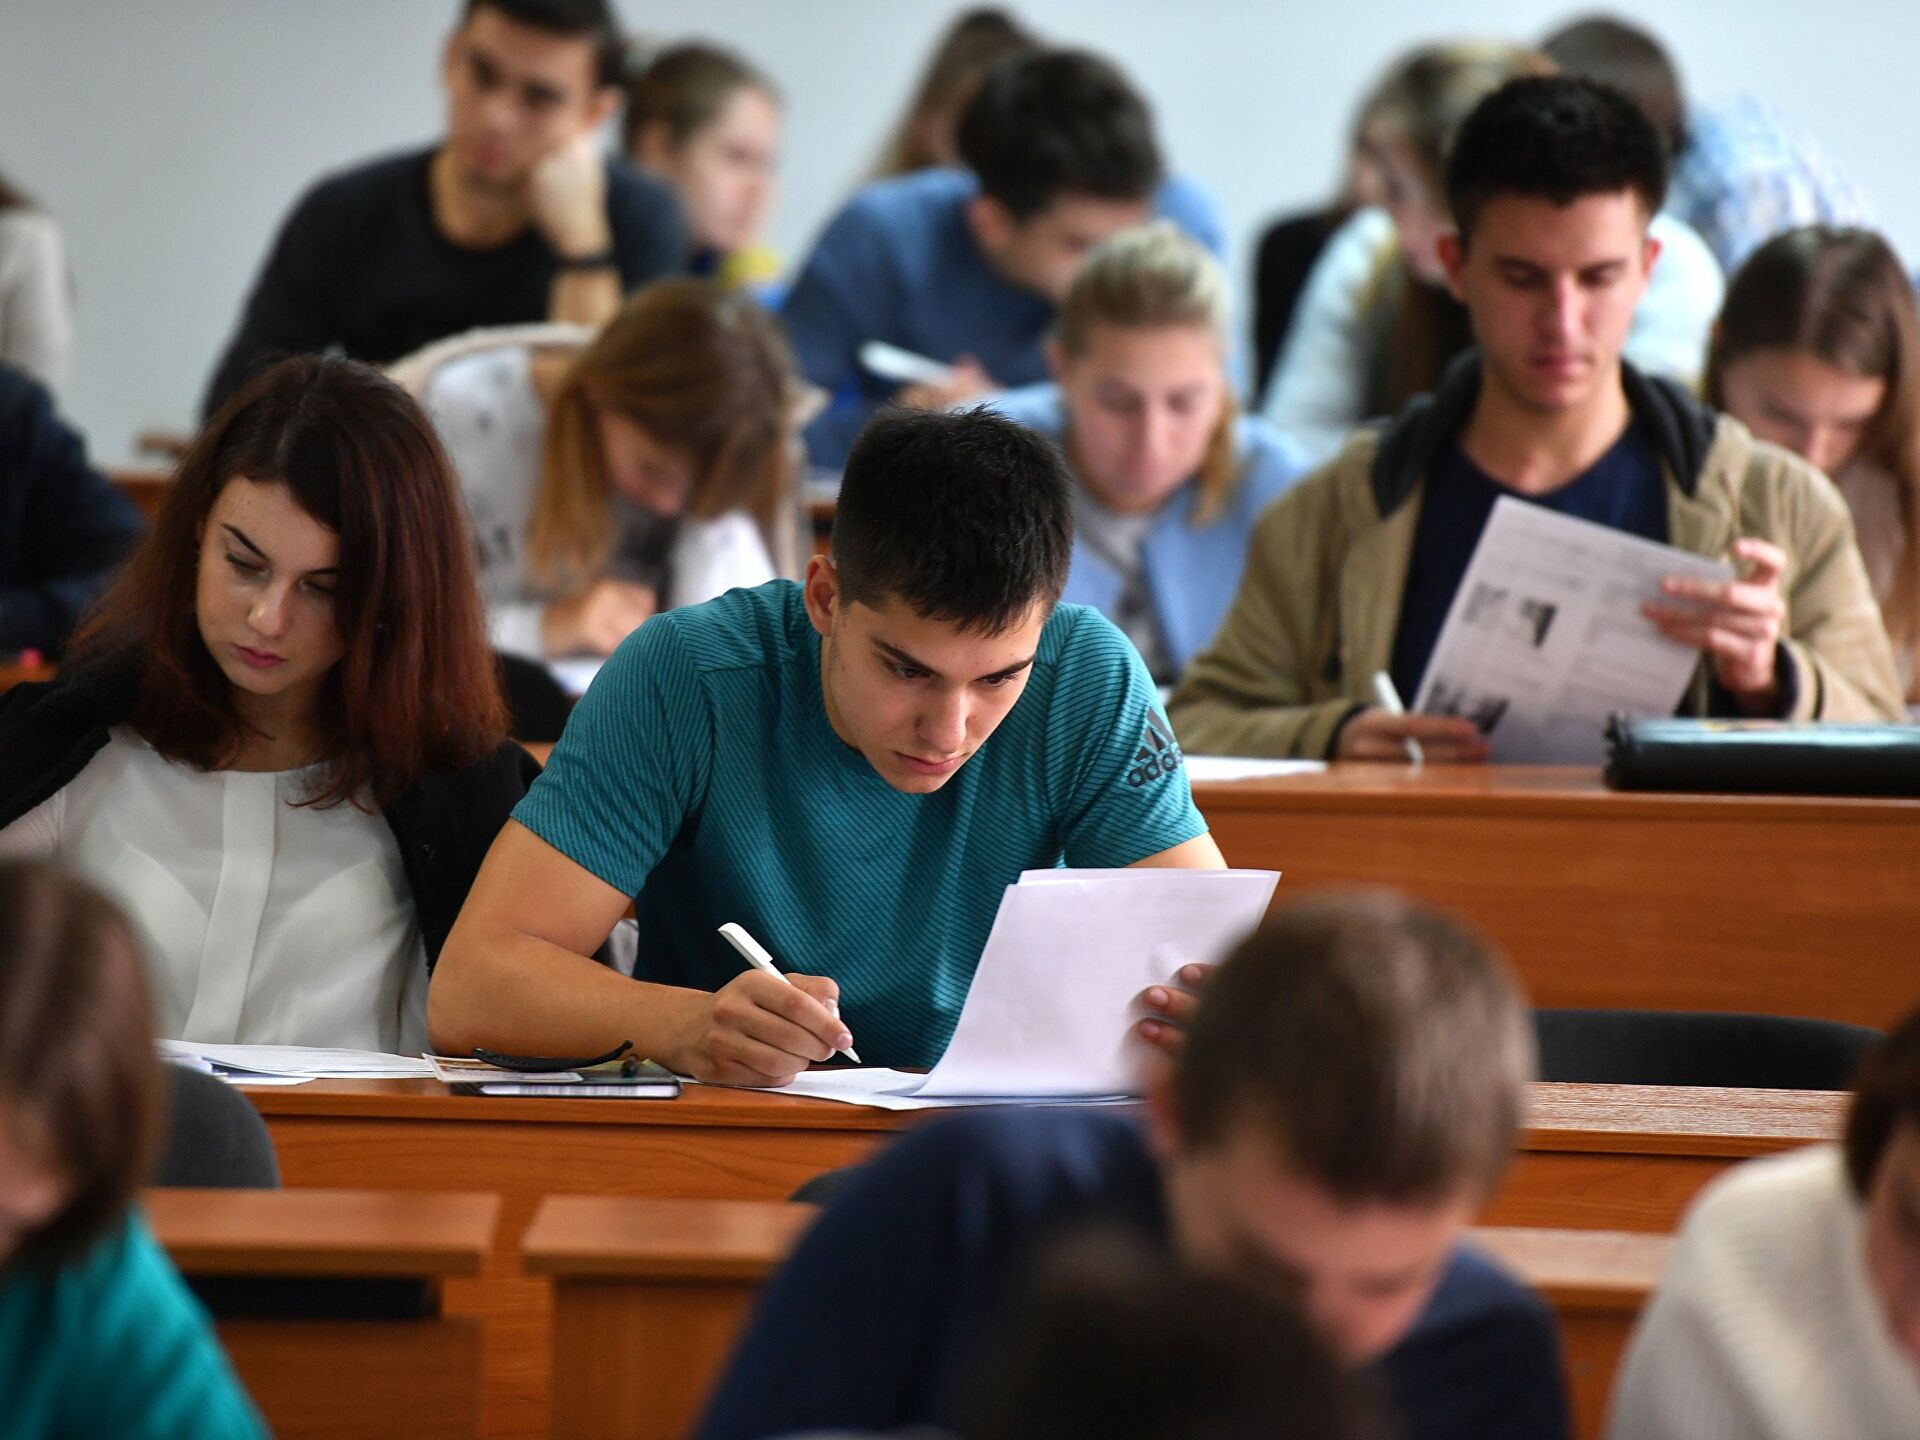 В Узбекистане студенты, провалившие госэкзамен, смогут пересдать его два раза в год